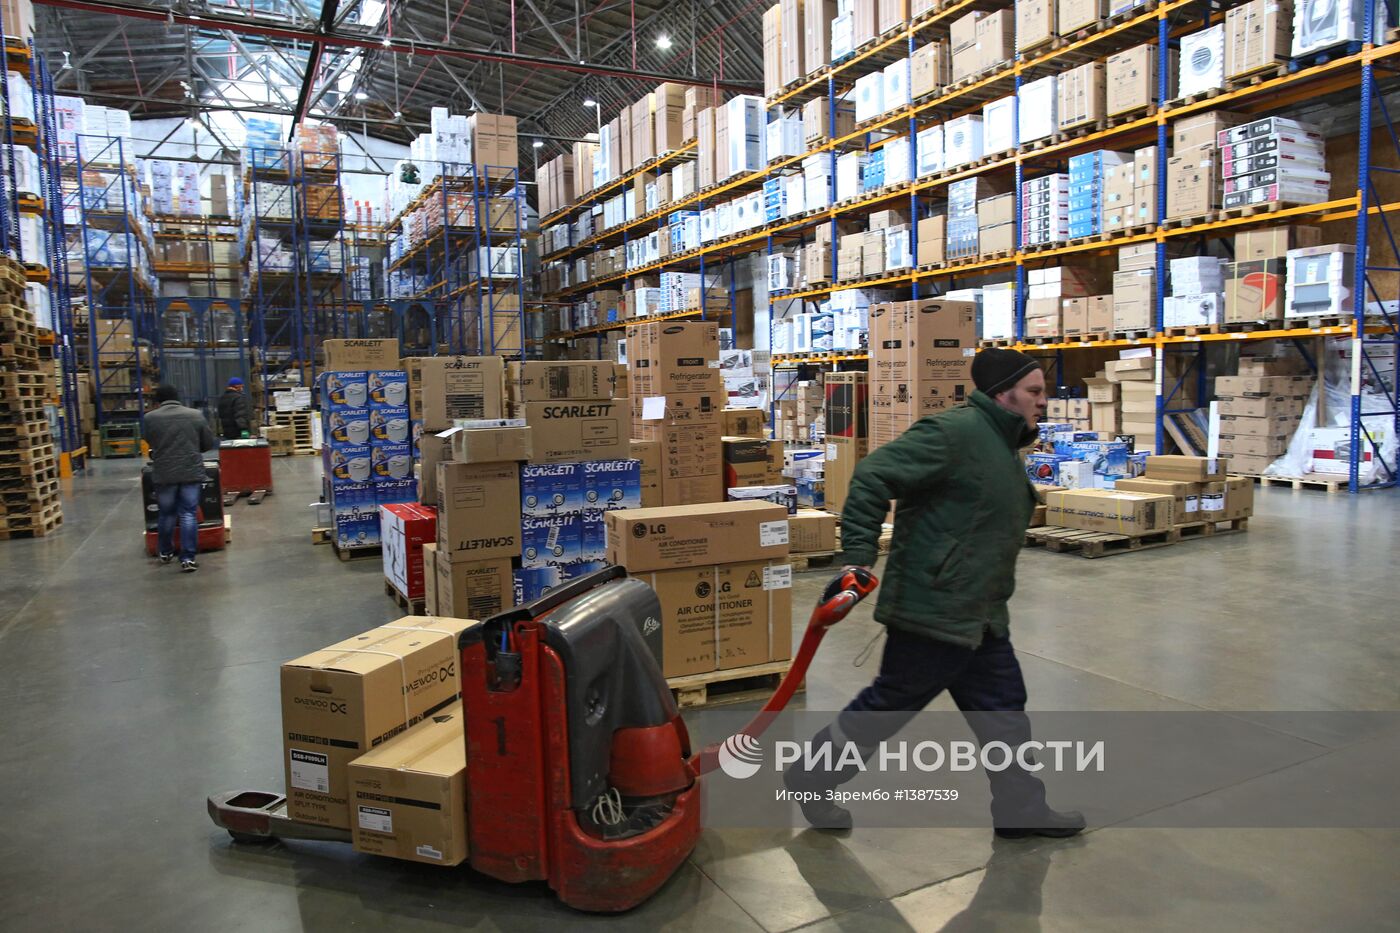 Работа оптовой базы группы компаний "Вестер" в Калининграде